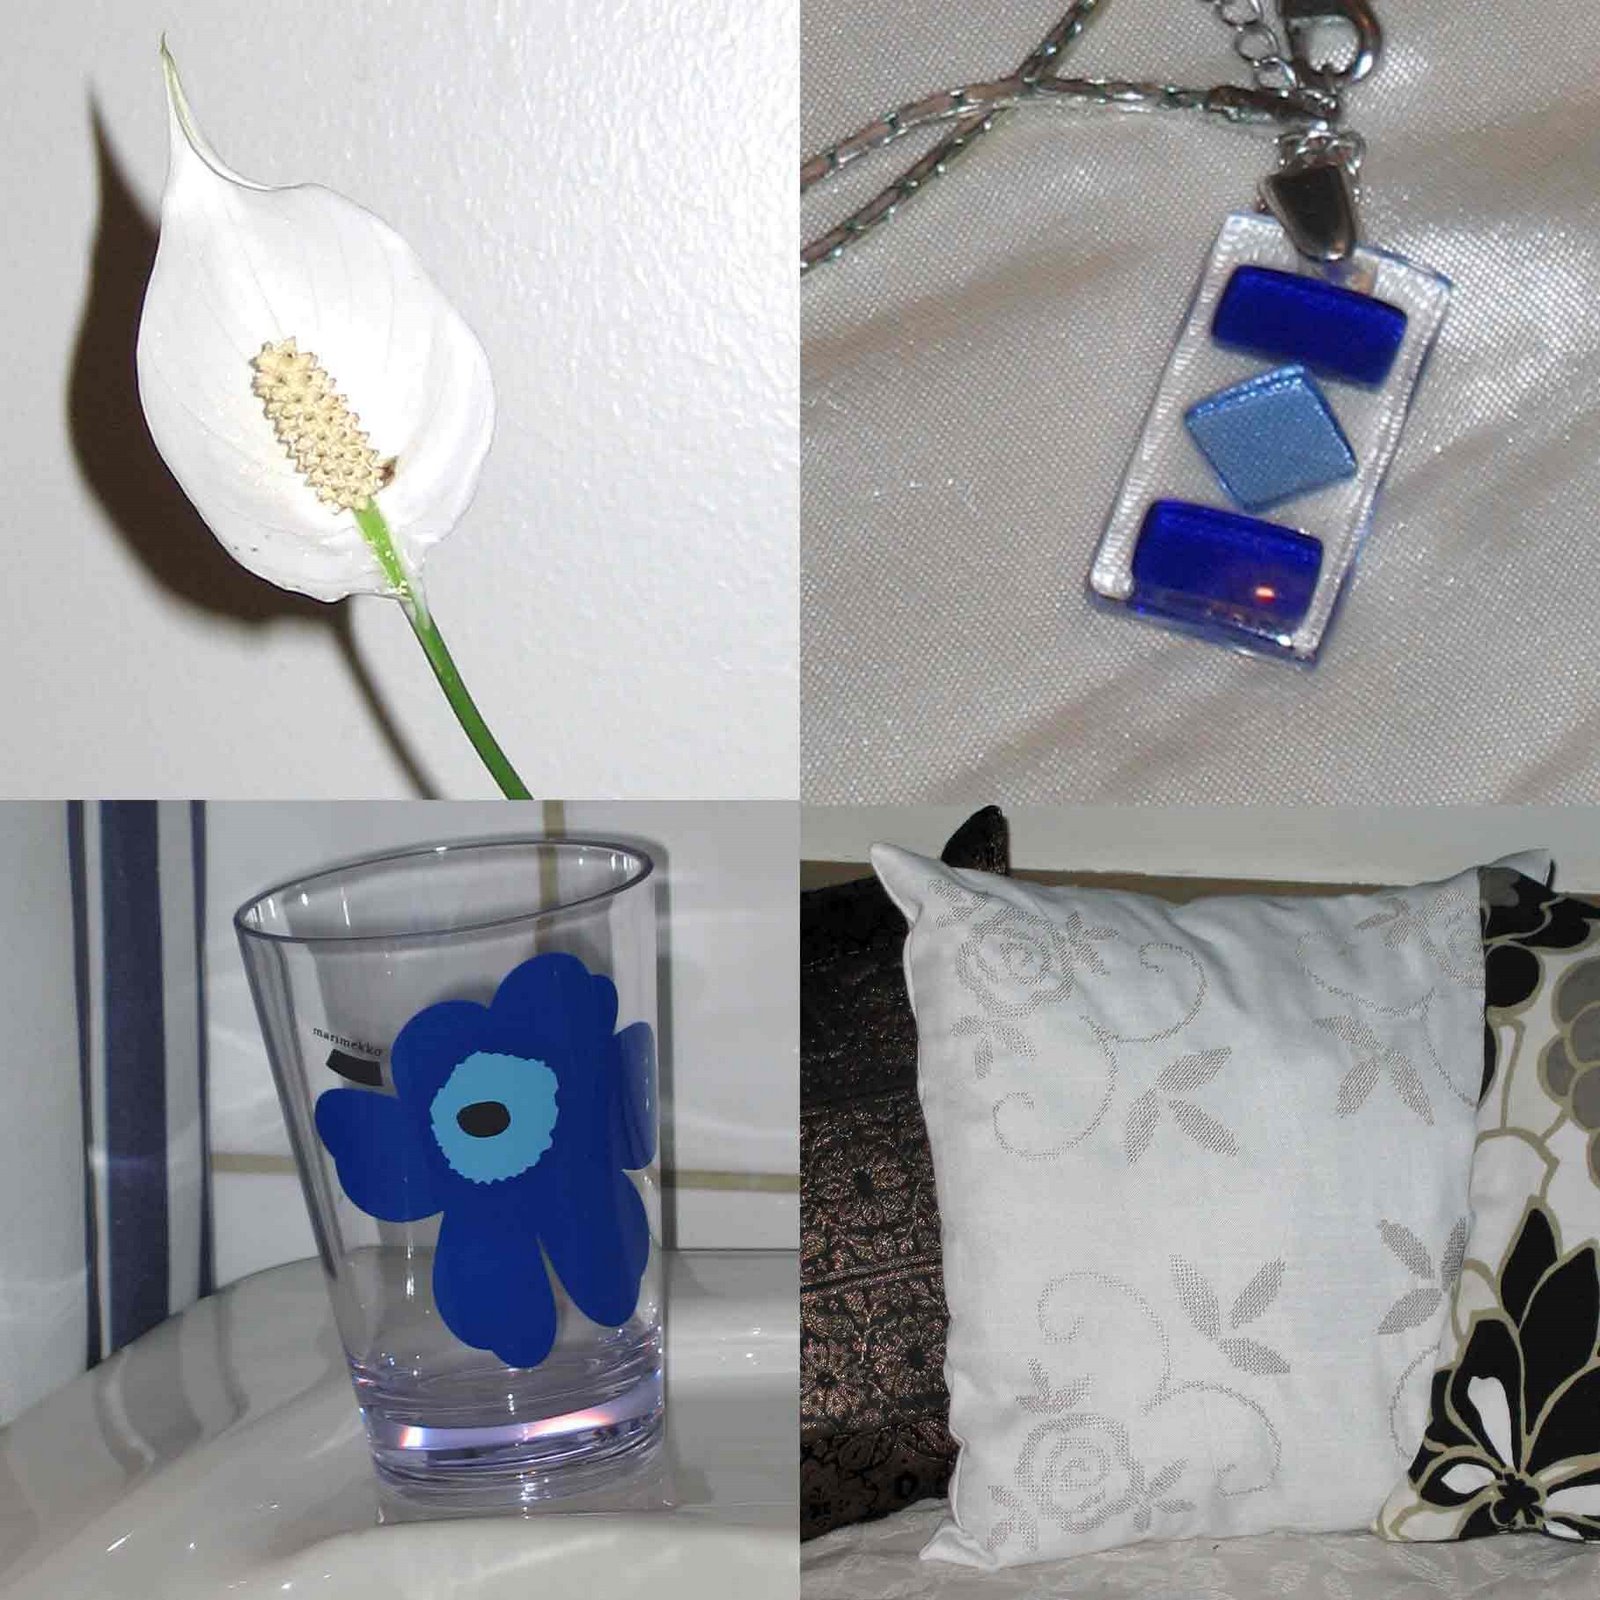 Vit fredslilja, blått halssmycke från Kreta, blå Marimekko-mugg, vit kudde